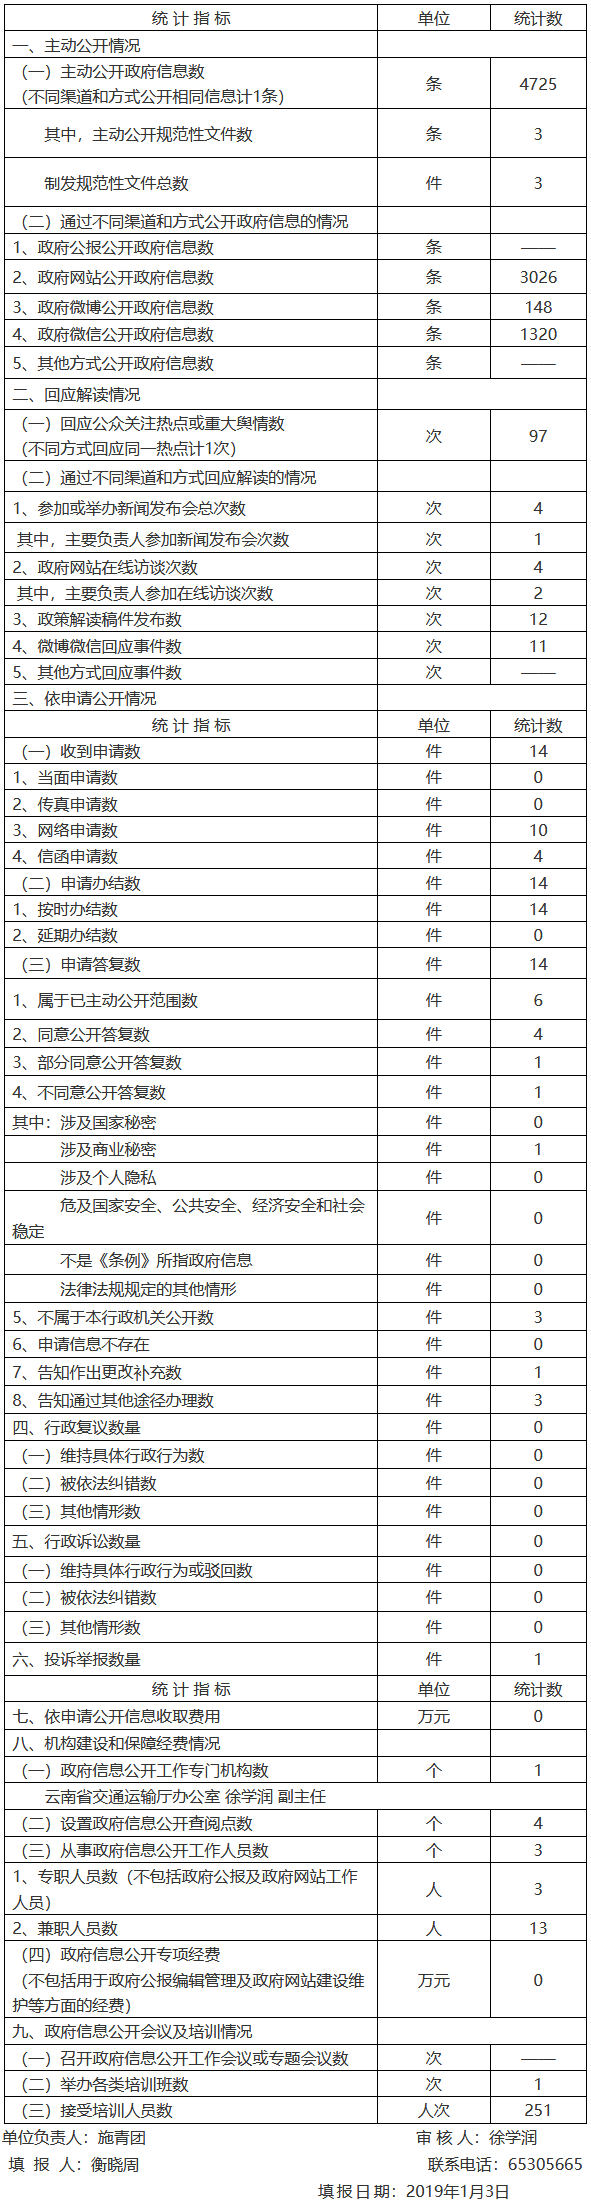 云南省交通运输厅2018年政府信息公开工作年度报告.png